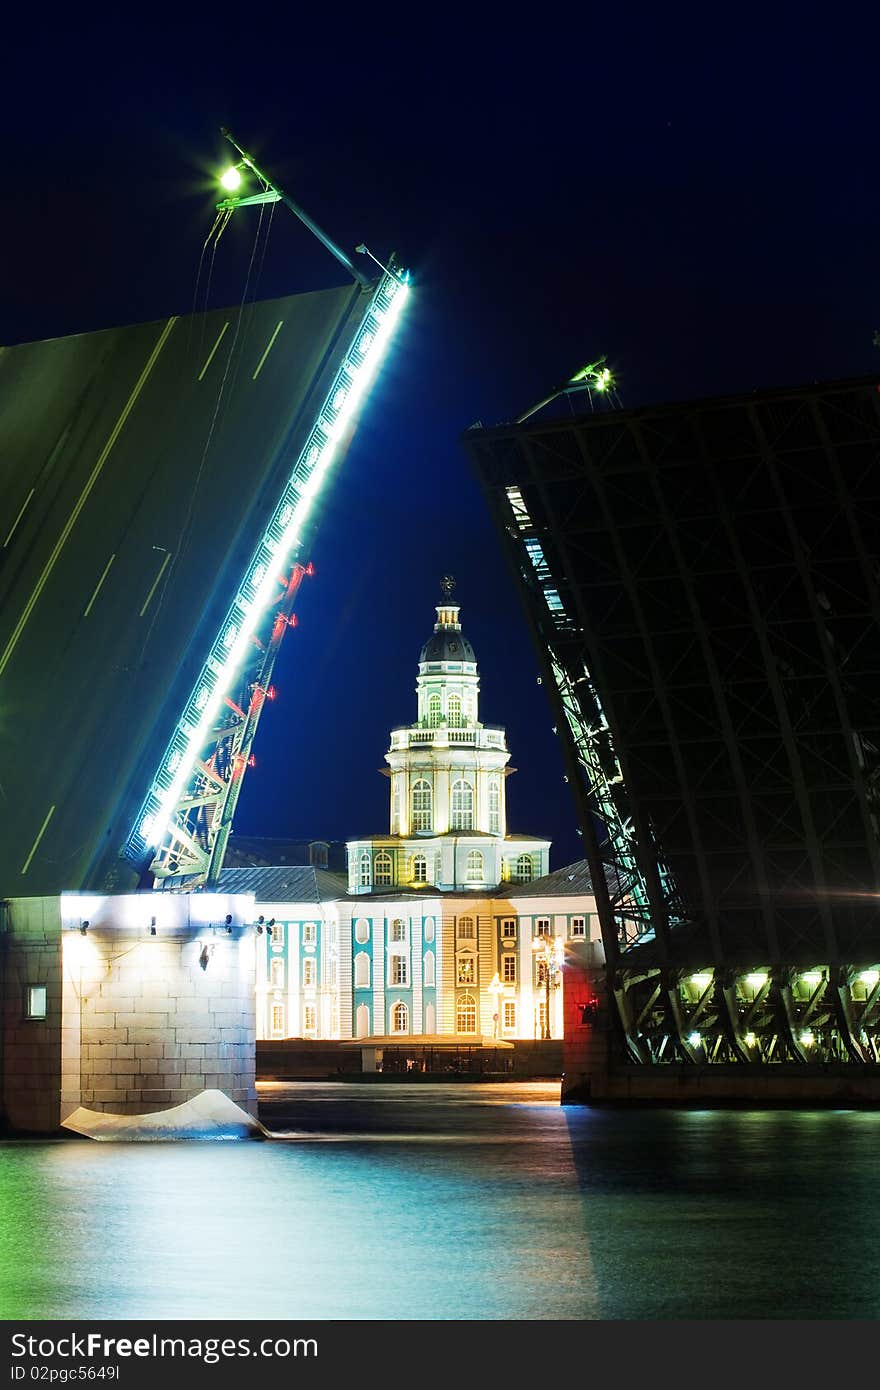 St.-Petersburg, Night kind with leaf bridges